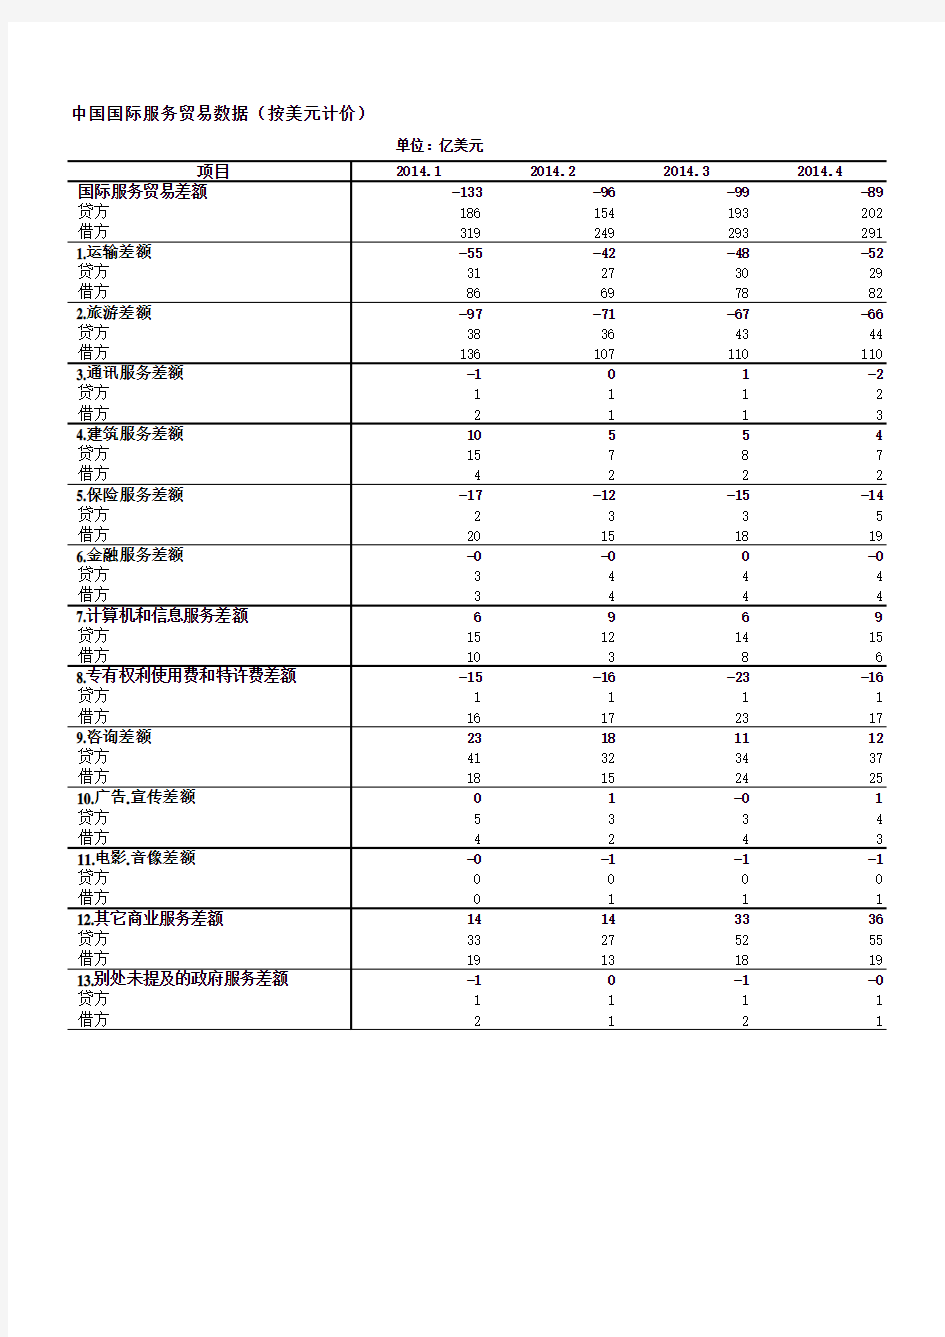 中国国际服务贸易数据--以美元计价(更新至2014.4)